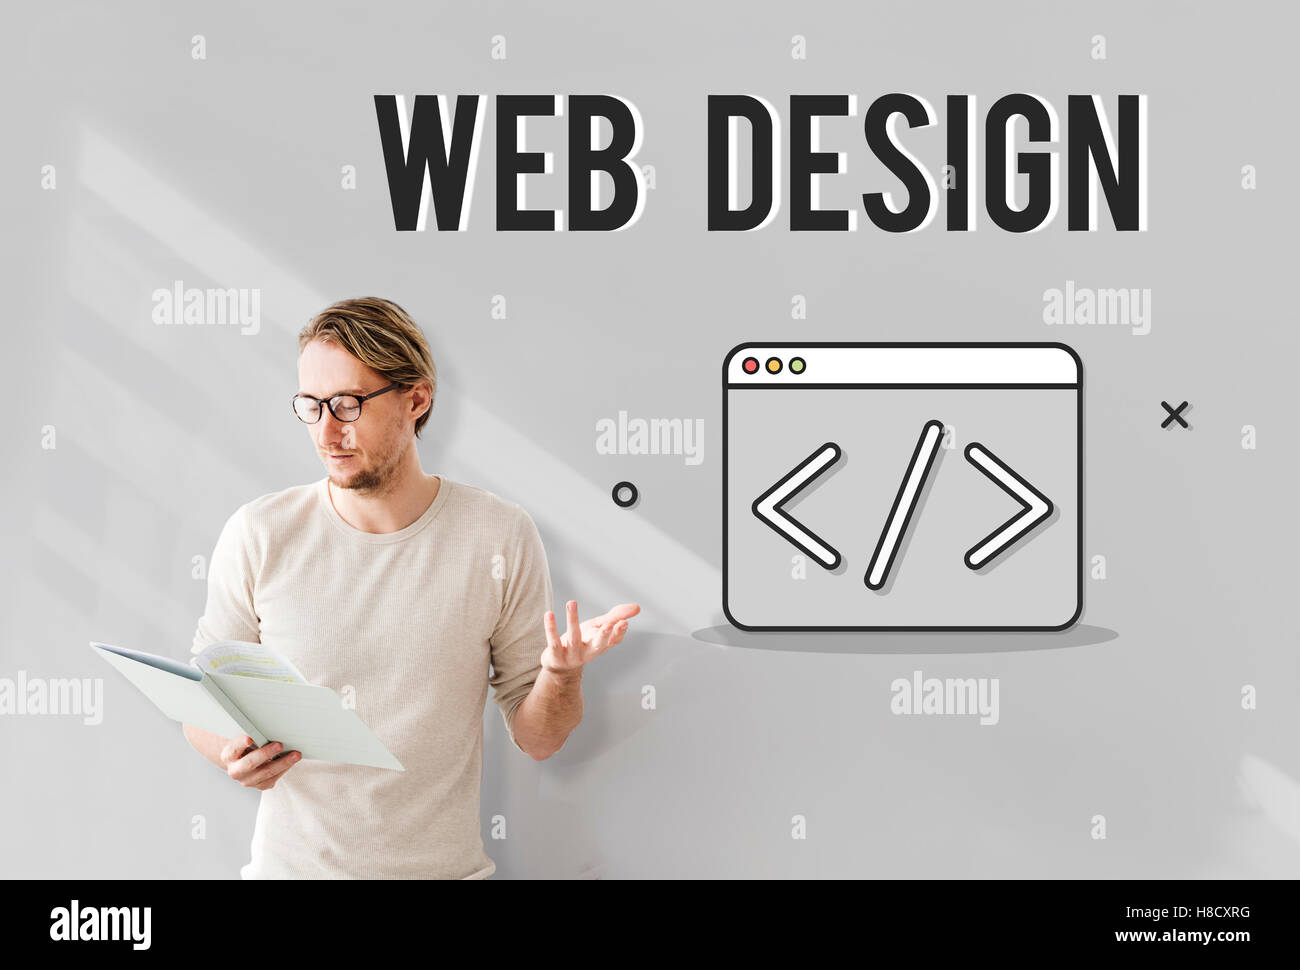 Web Development Symbol Icon Concept Stock Photo